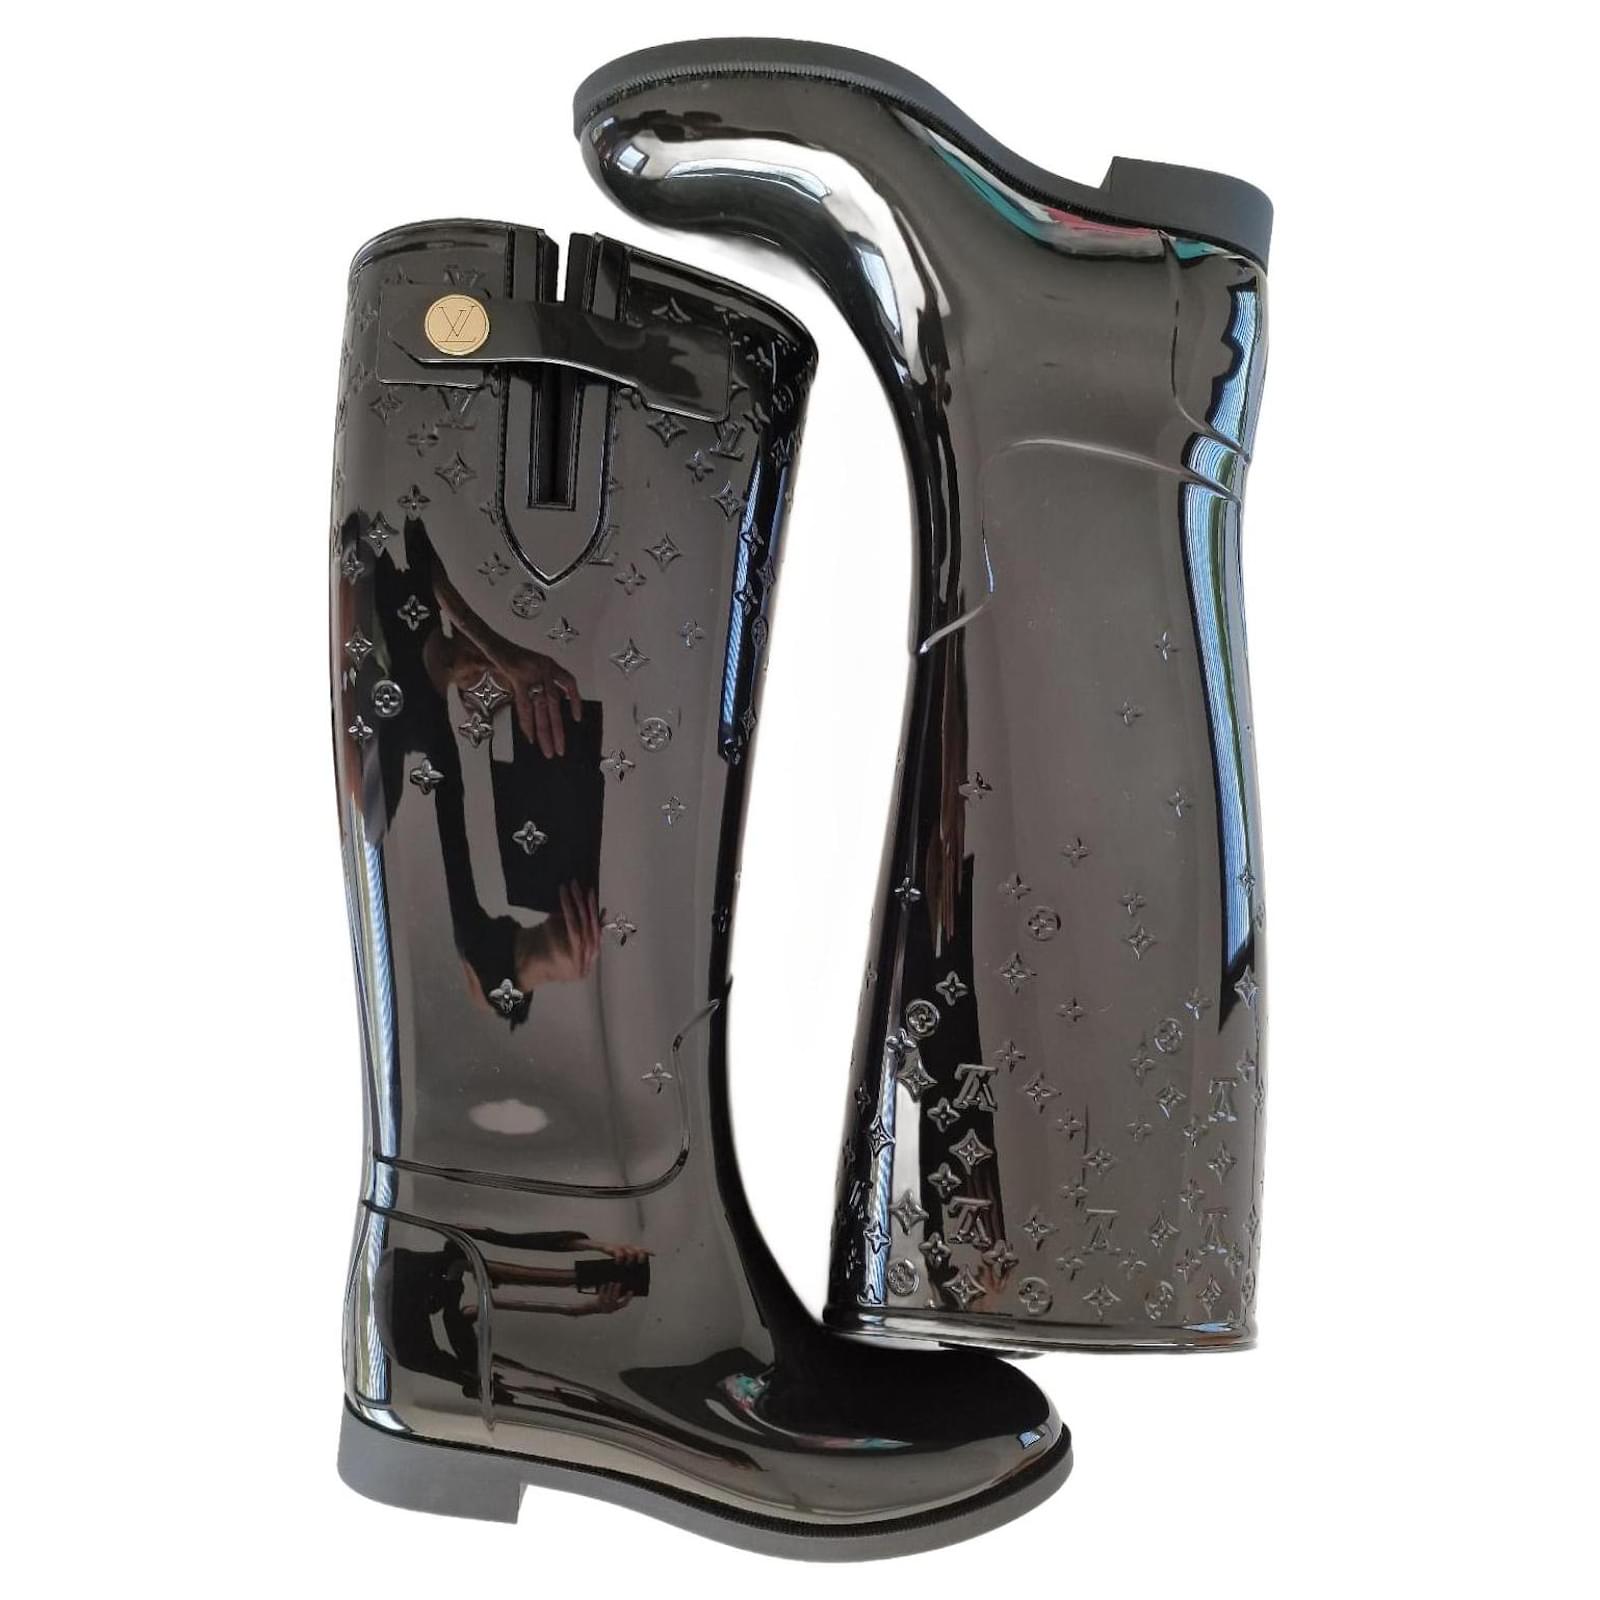 Louis Vuitton Rubber Rain Boots - Black Boots, Shoes - LOU761247